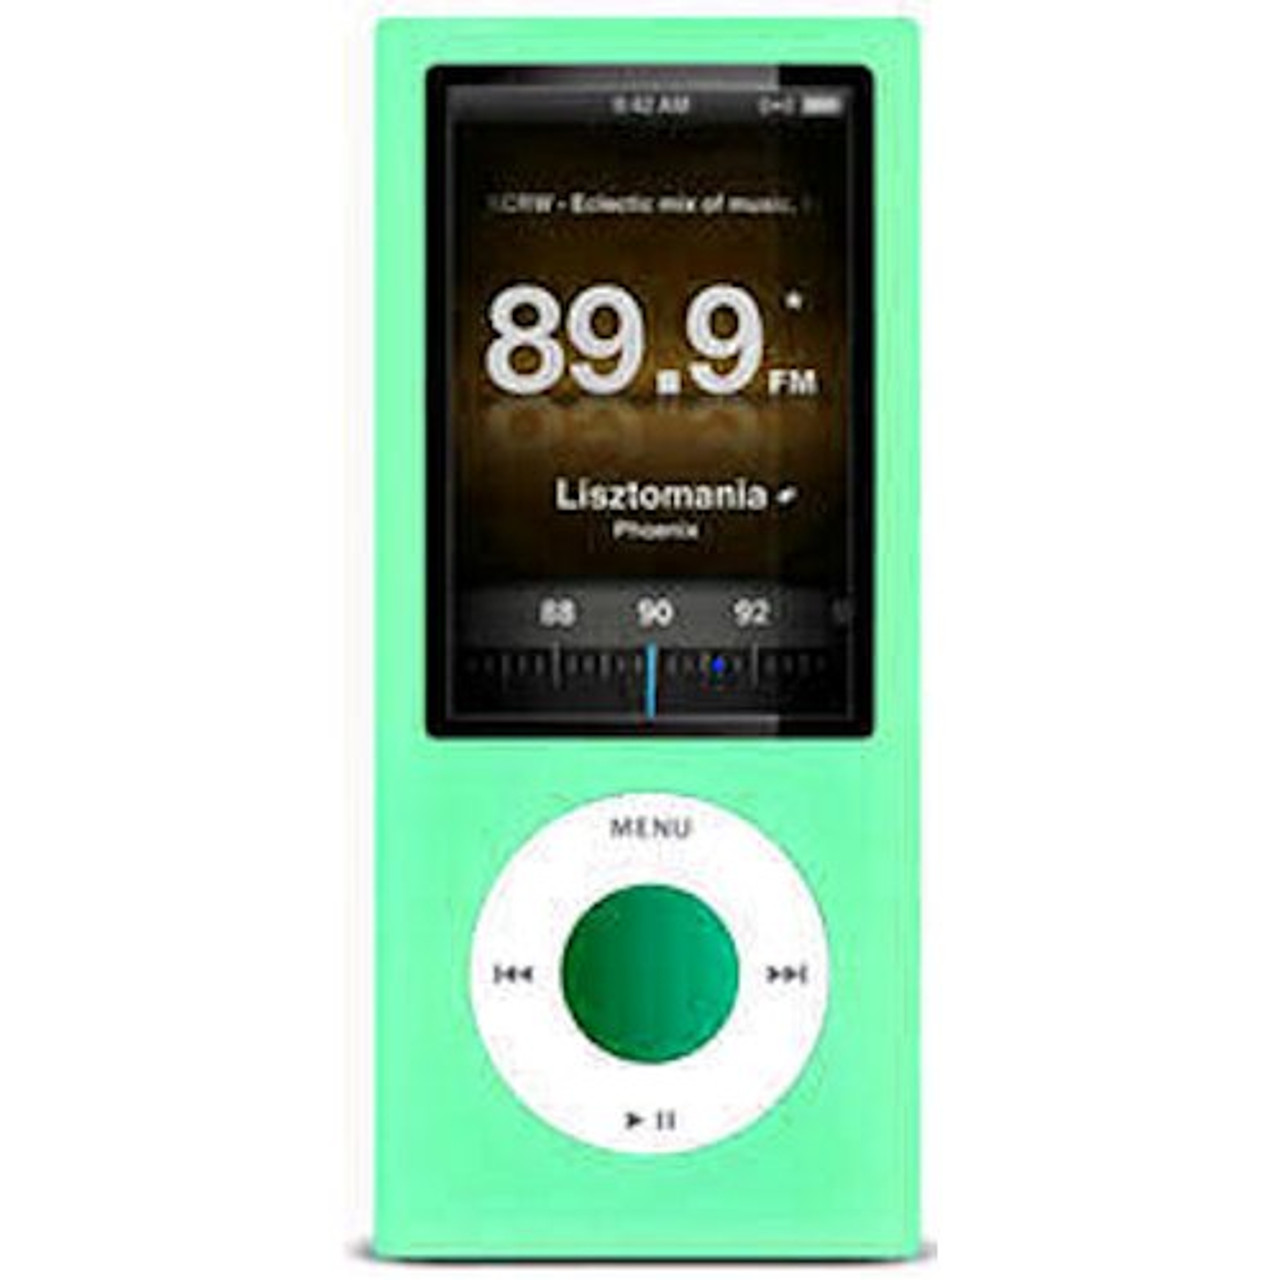 iPod nano 5G